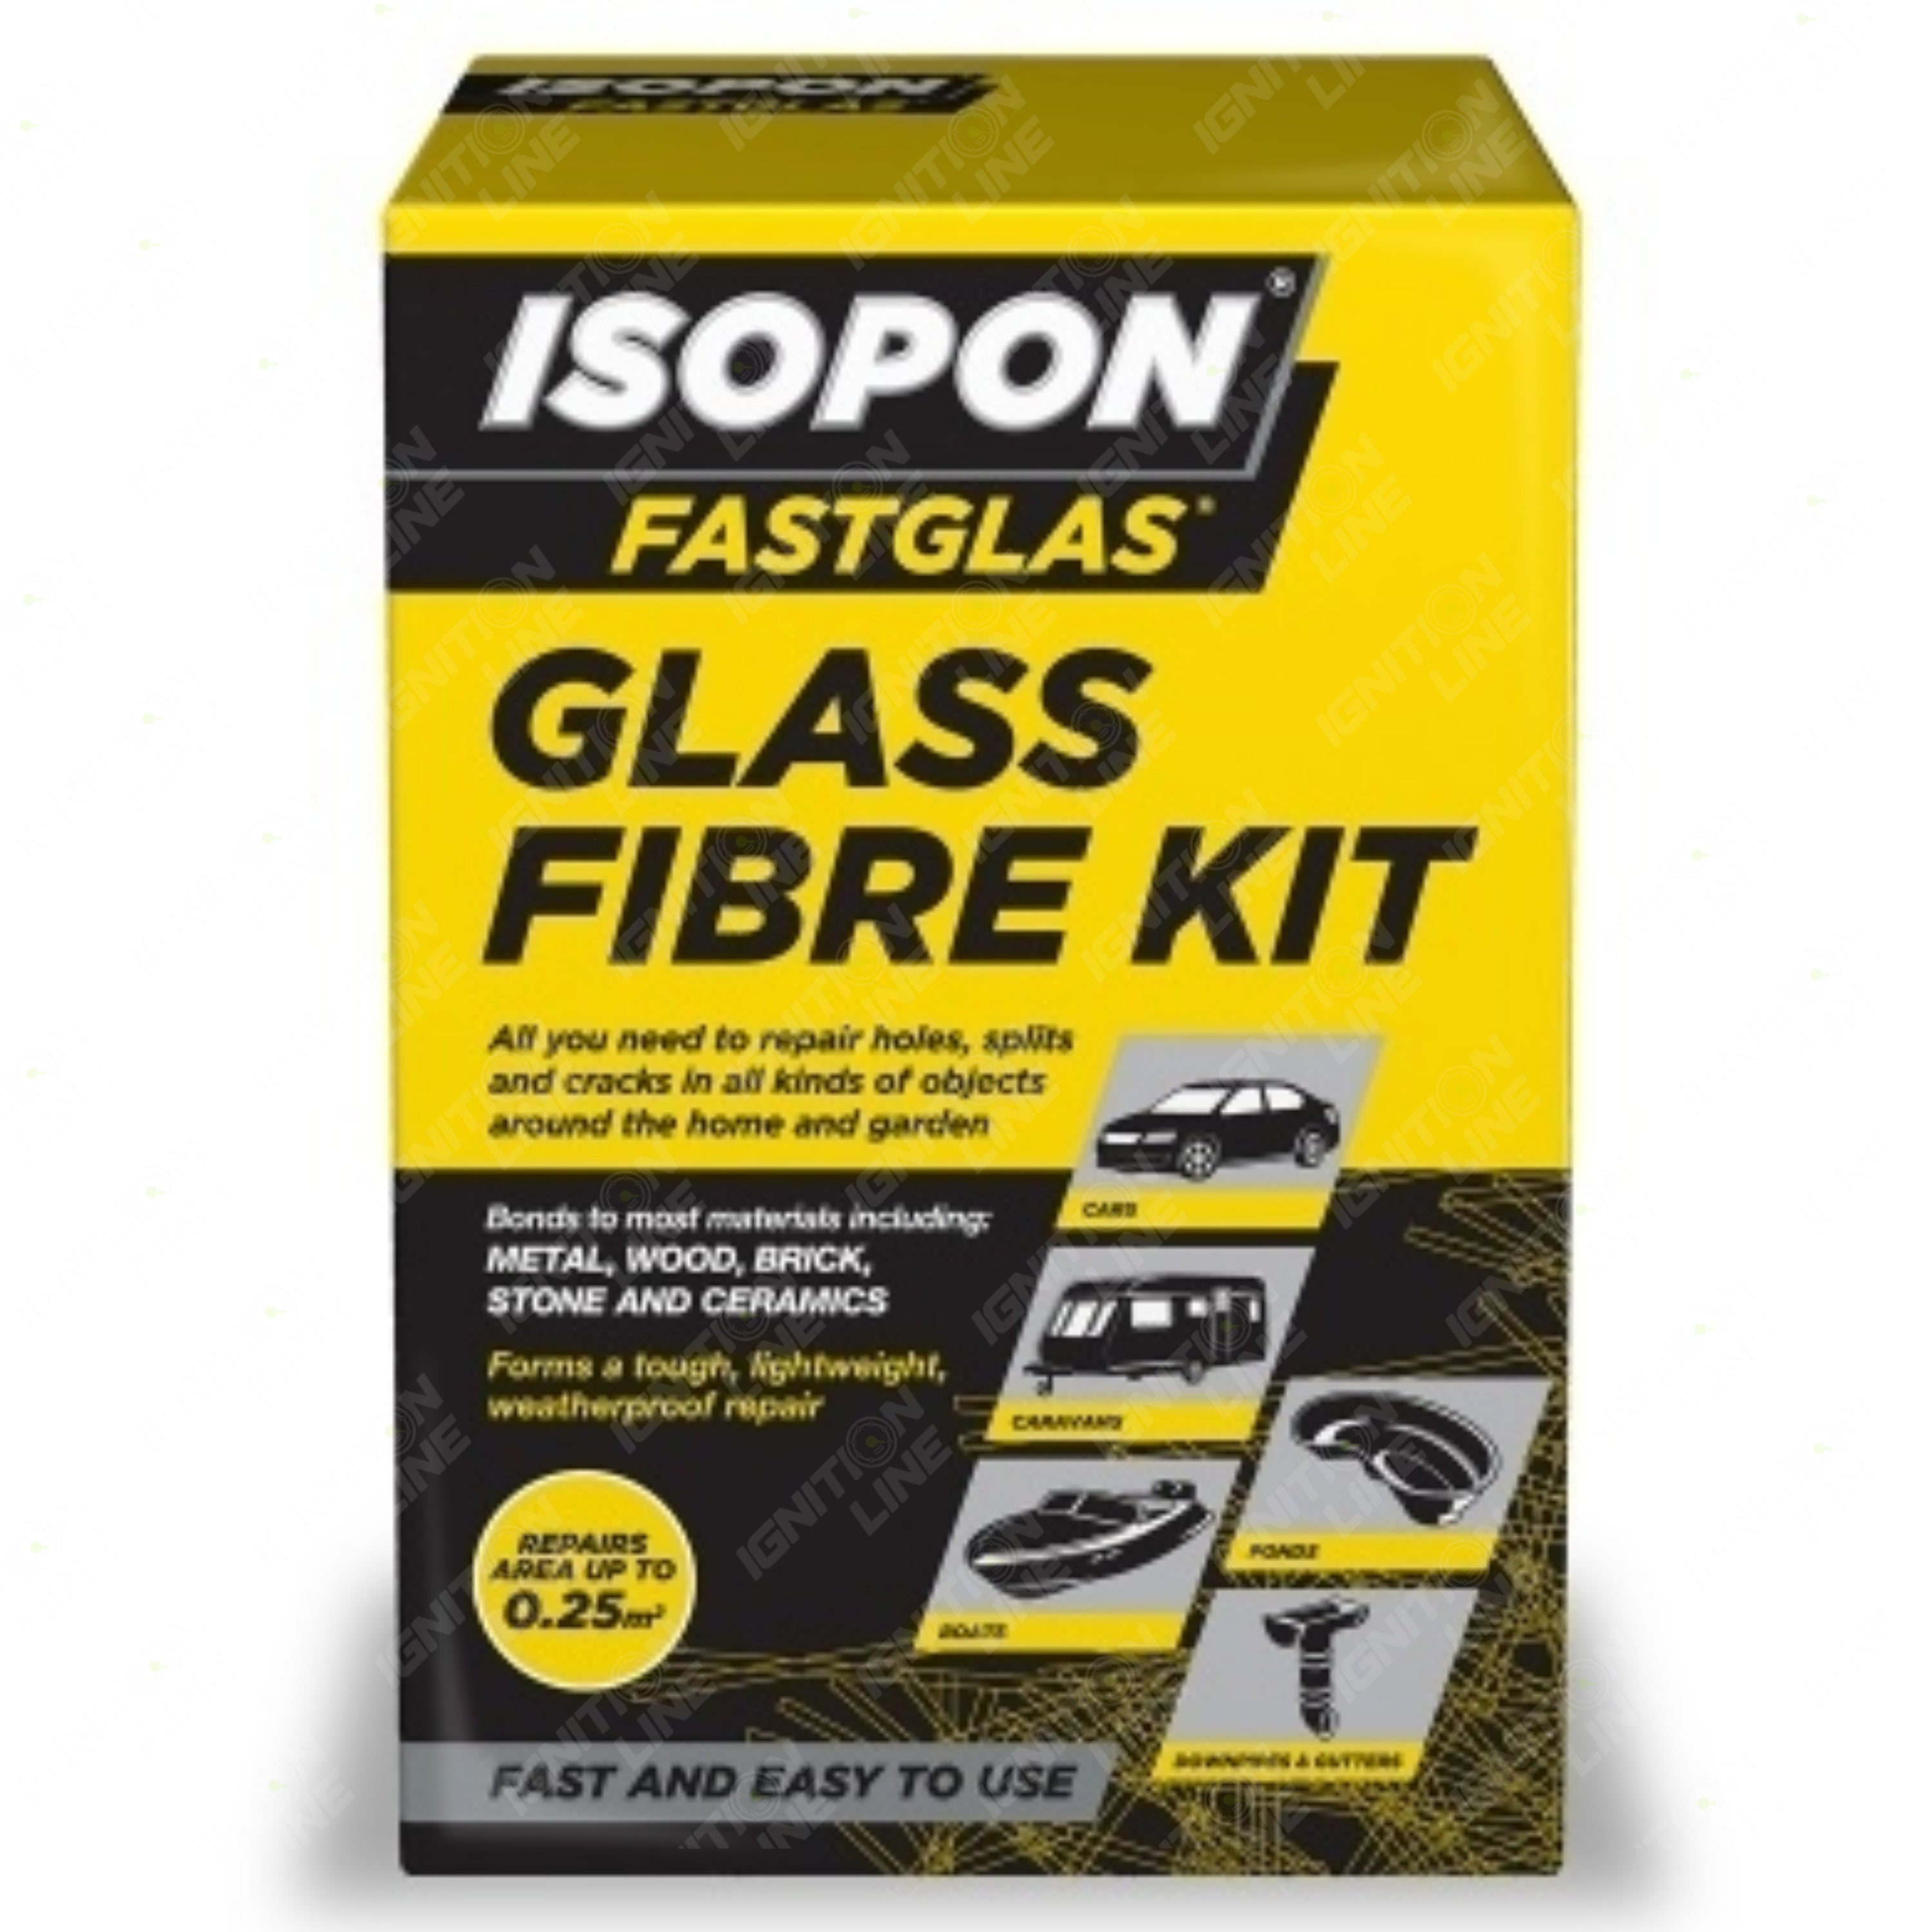 Isopon Glass Fibre Kit